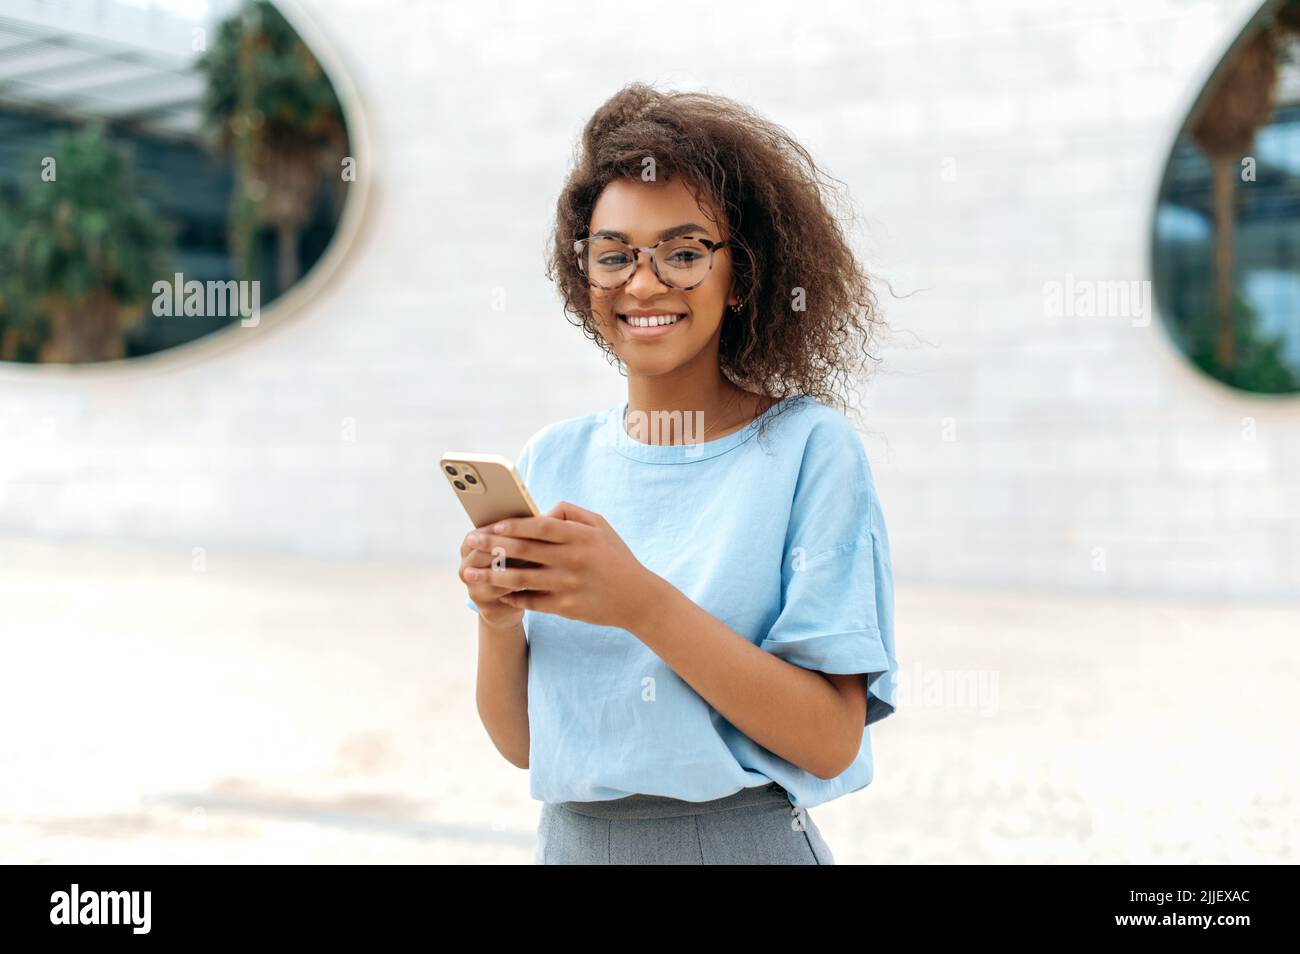 Gadget, drahtlose Technologie. Erfolgreiche, schöne afroamerikanische junge lockige Frau mit Brille, in blauem Hemd, steht im Freien in der Nähe des Geschäftszentrums, nutzt ihr Smartphone, blickt auf die Kamera und lächelt Stockfoto